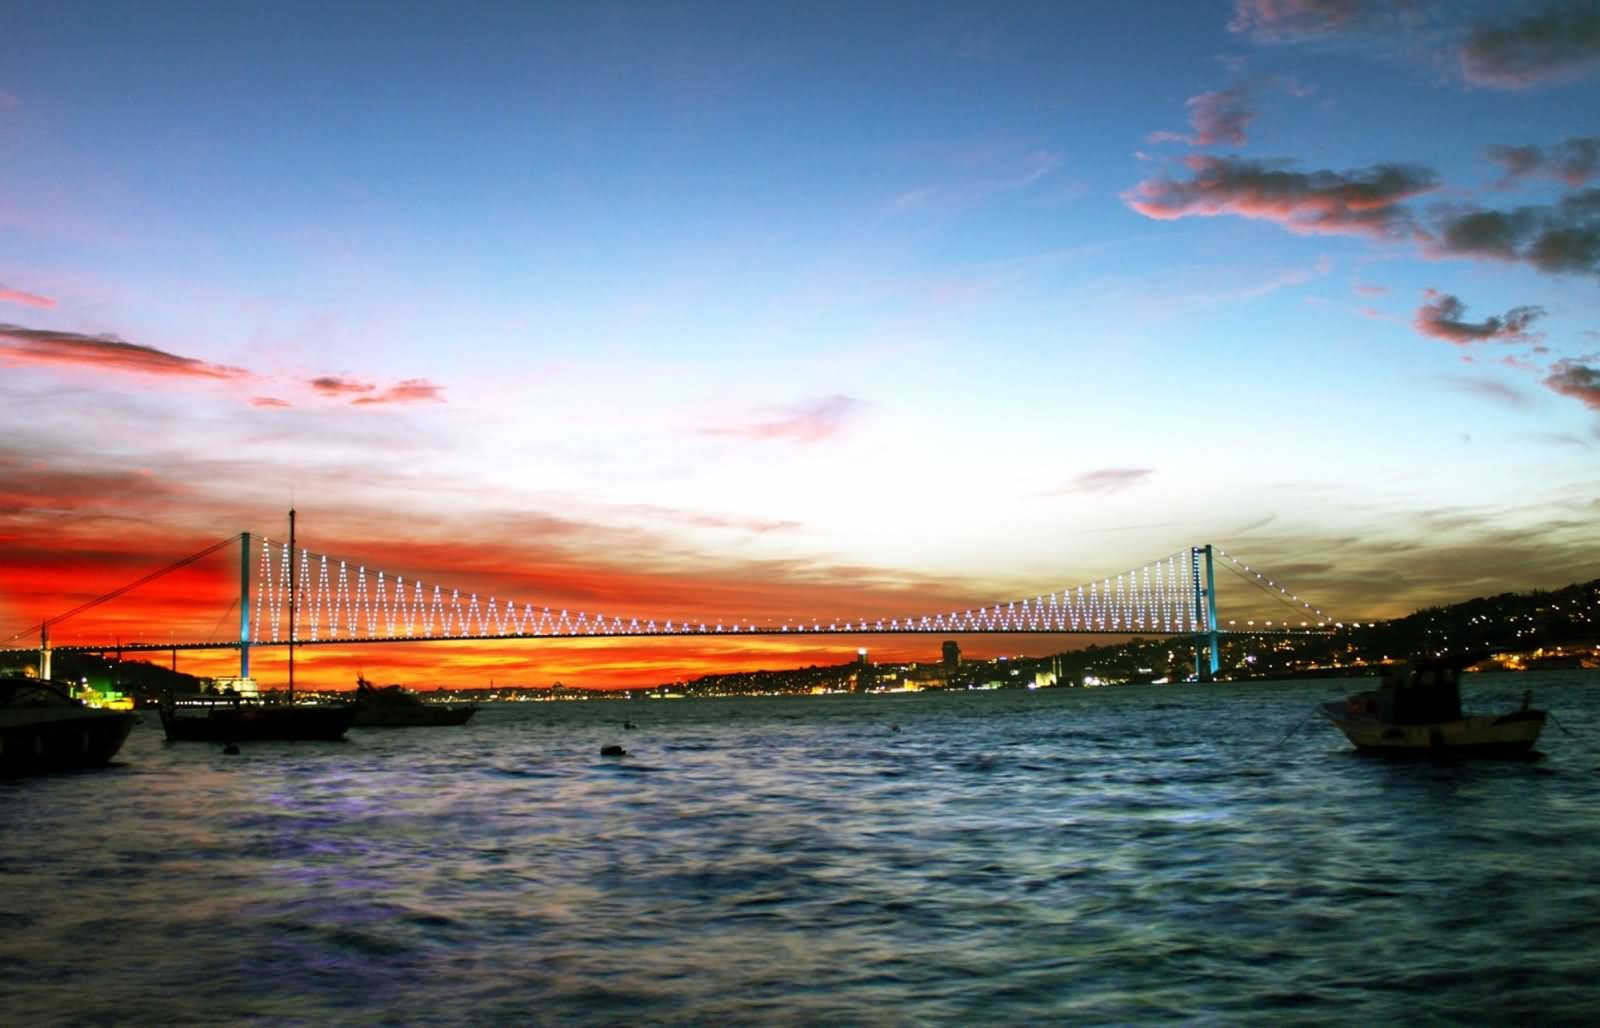 Beautiful Sunset View Of The Bosphorus Bridge